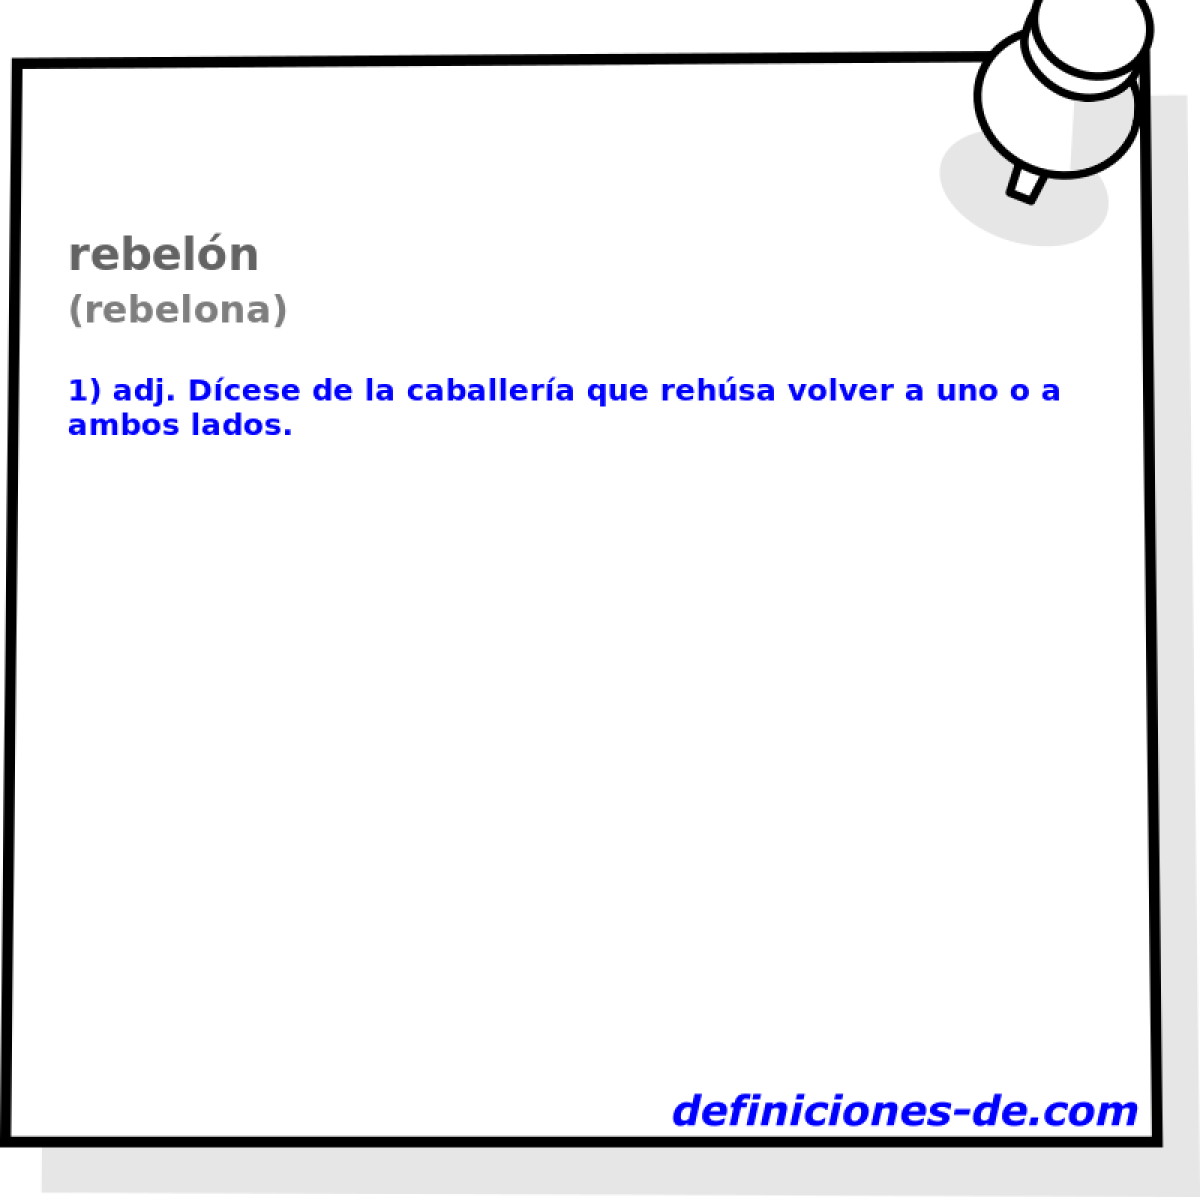 rebeln (rebelona)